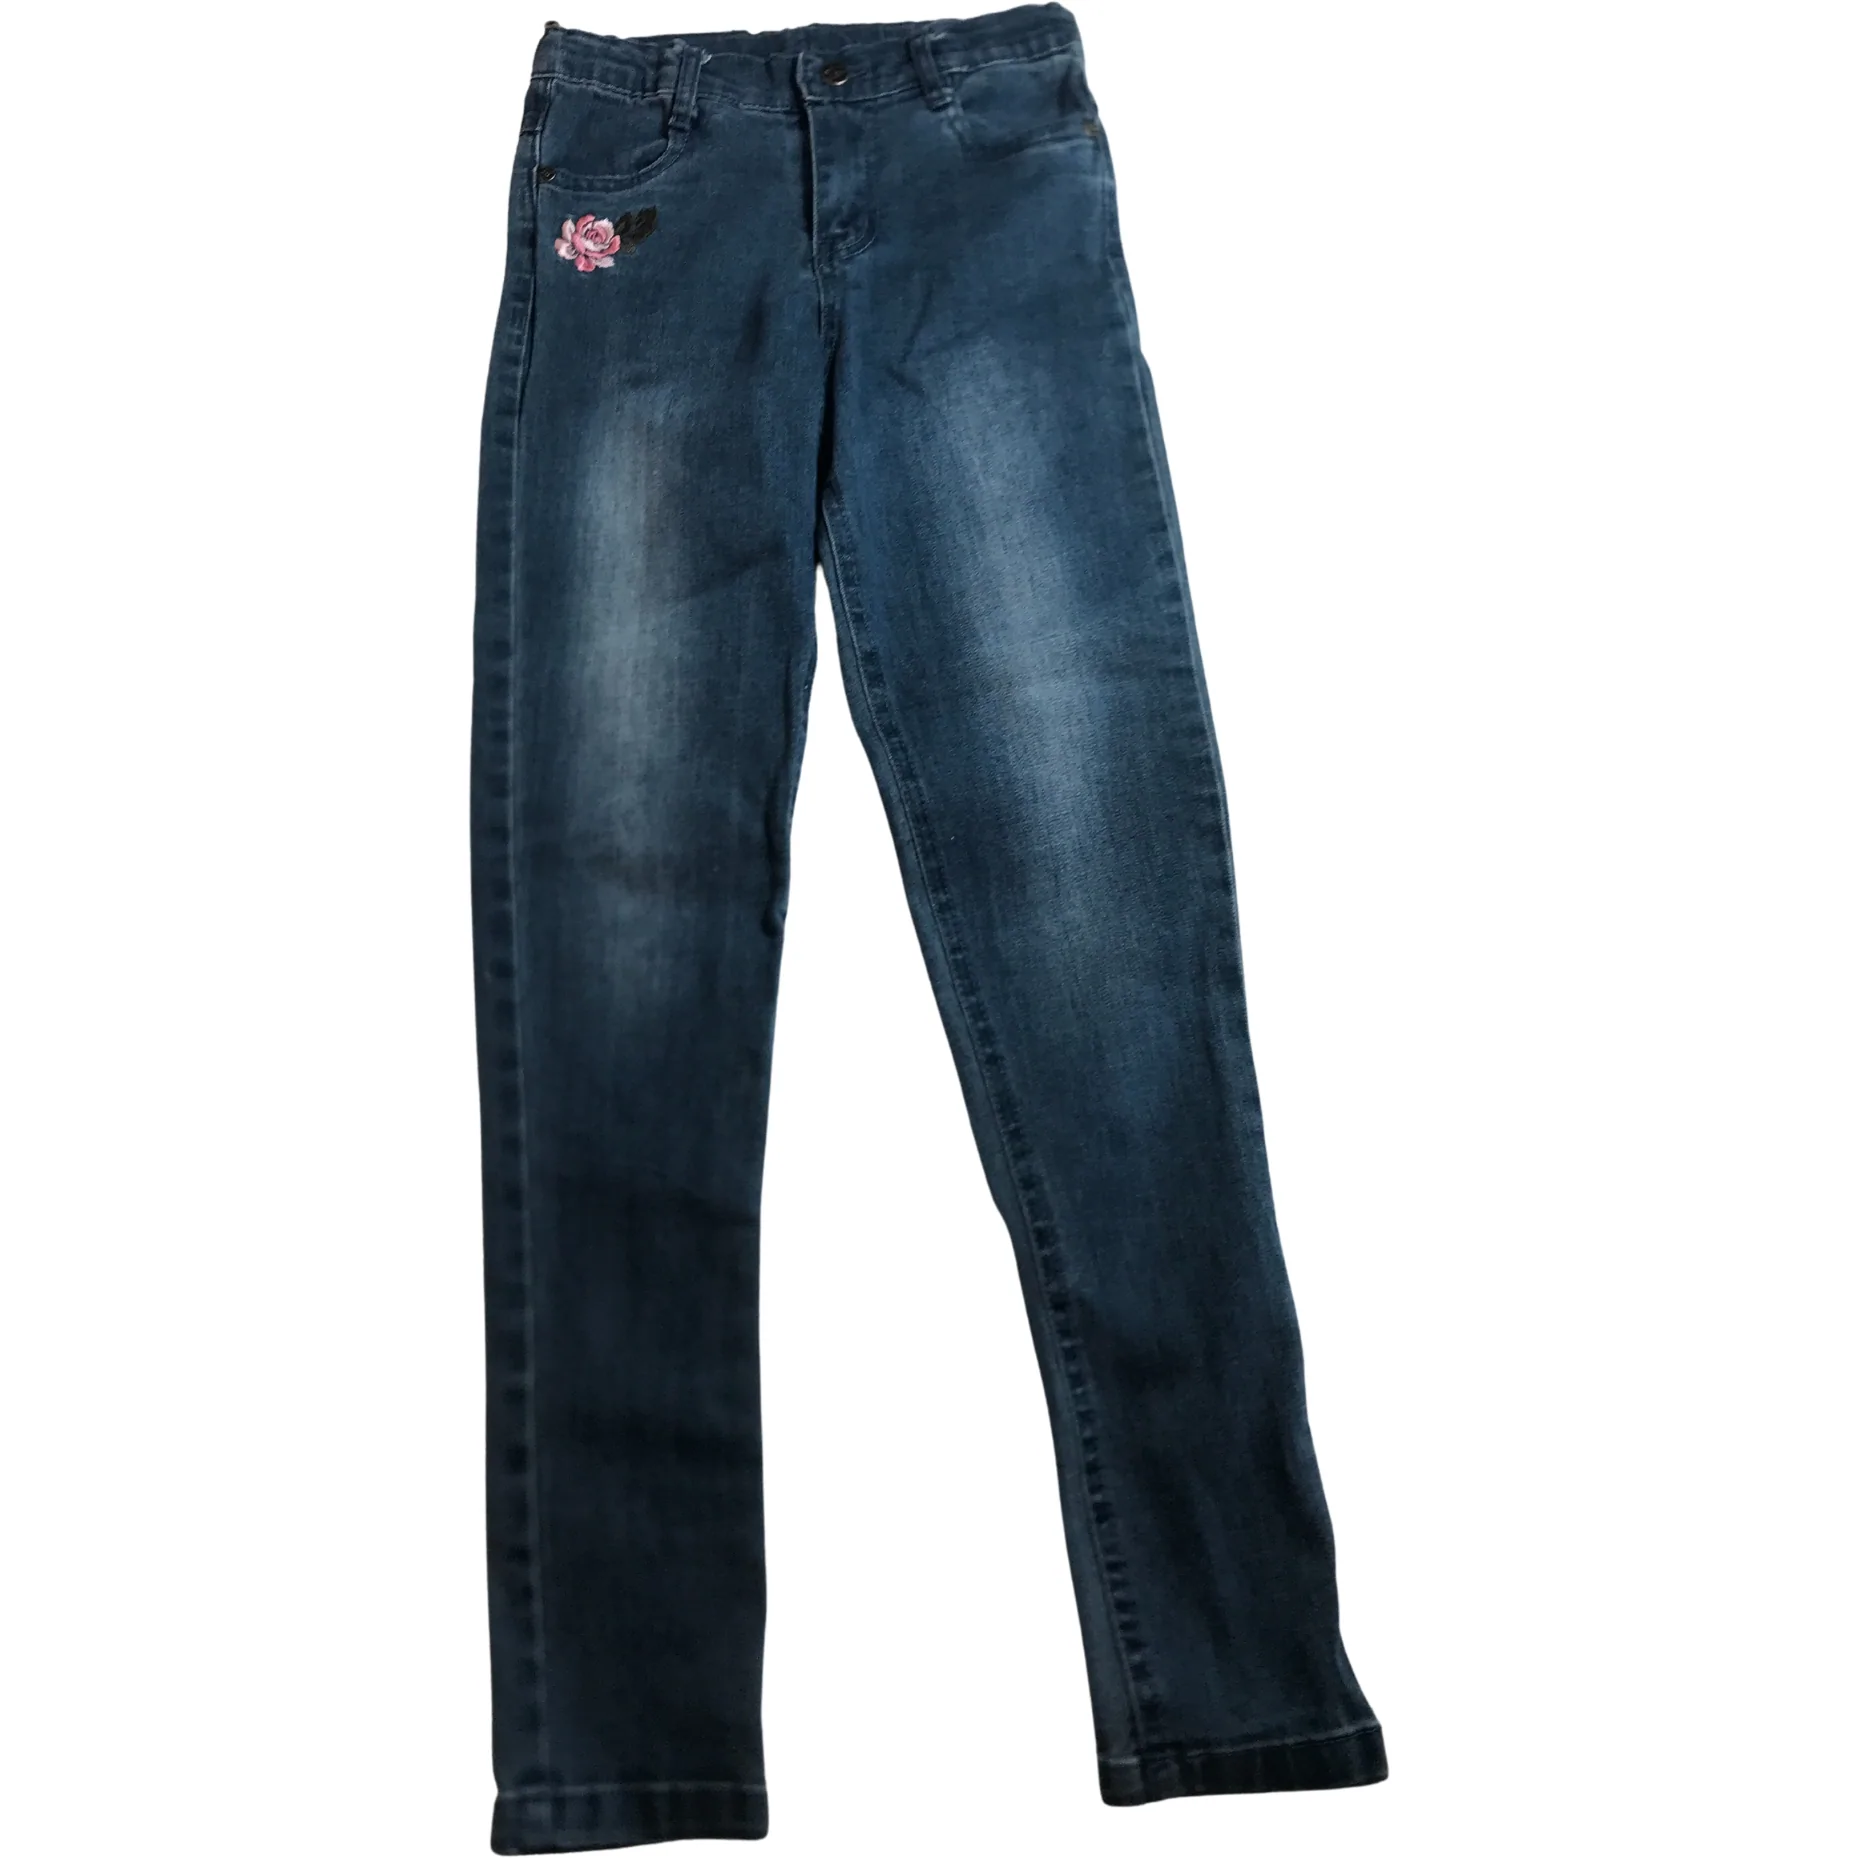 Preview Girl's Jeans: Girl's Jean Leggings / Denim / Floral Design / Size 8